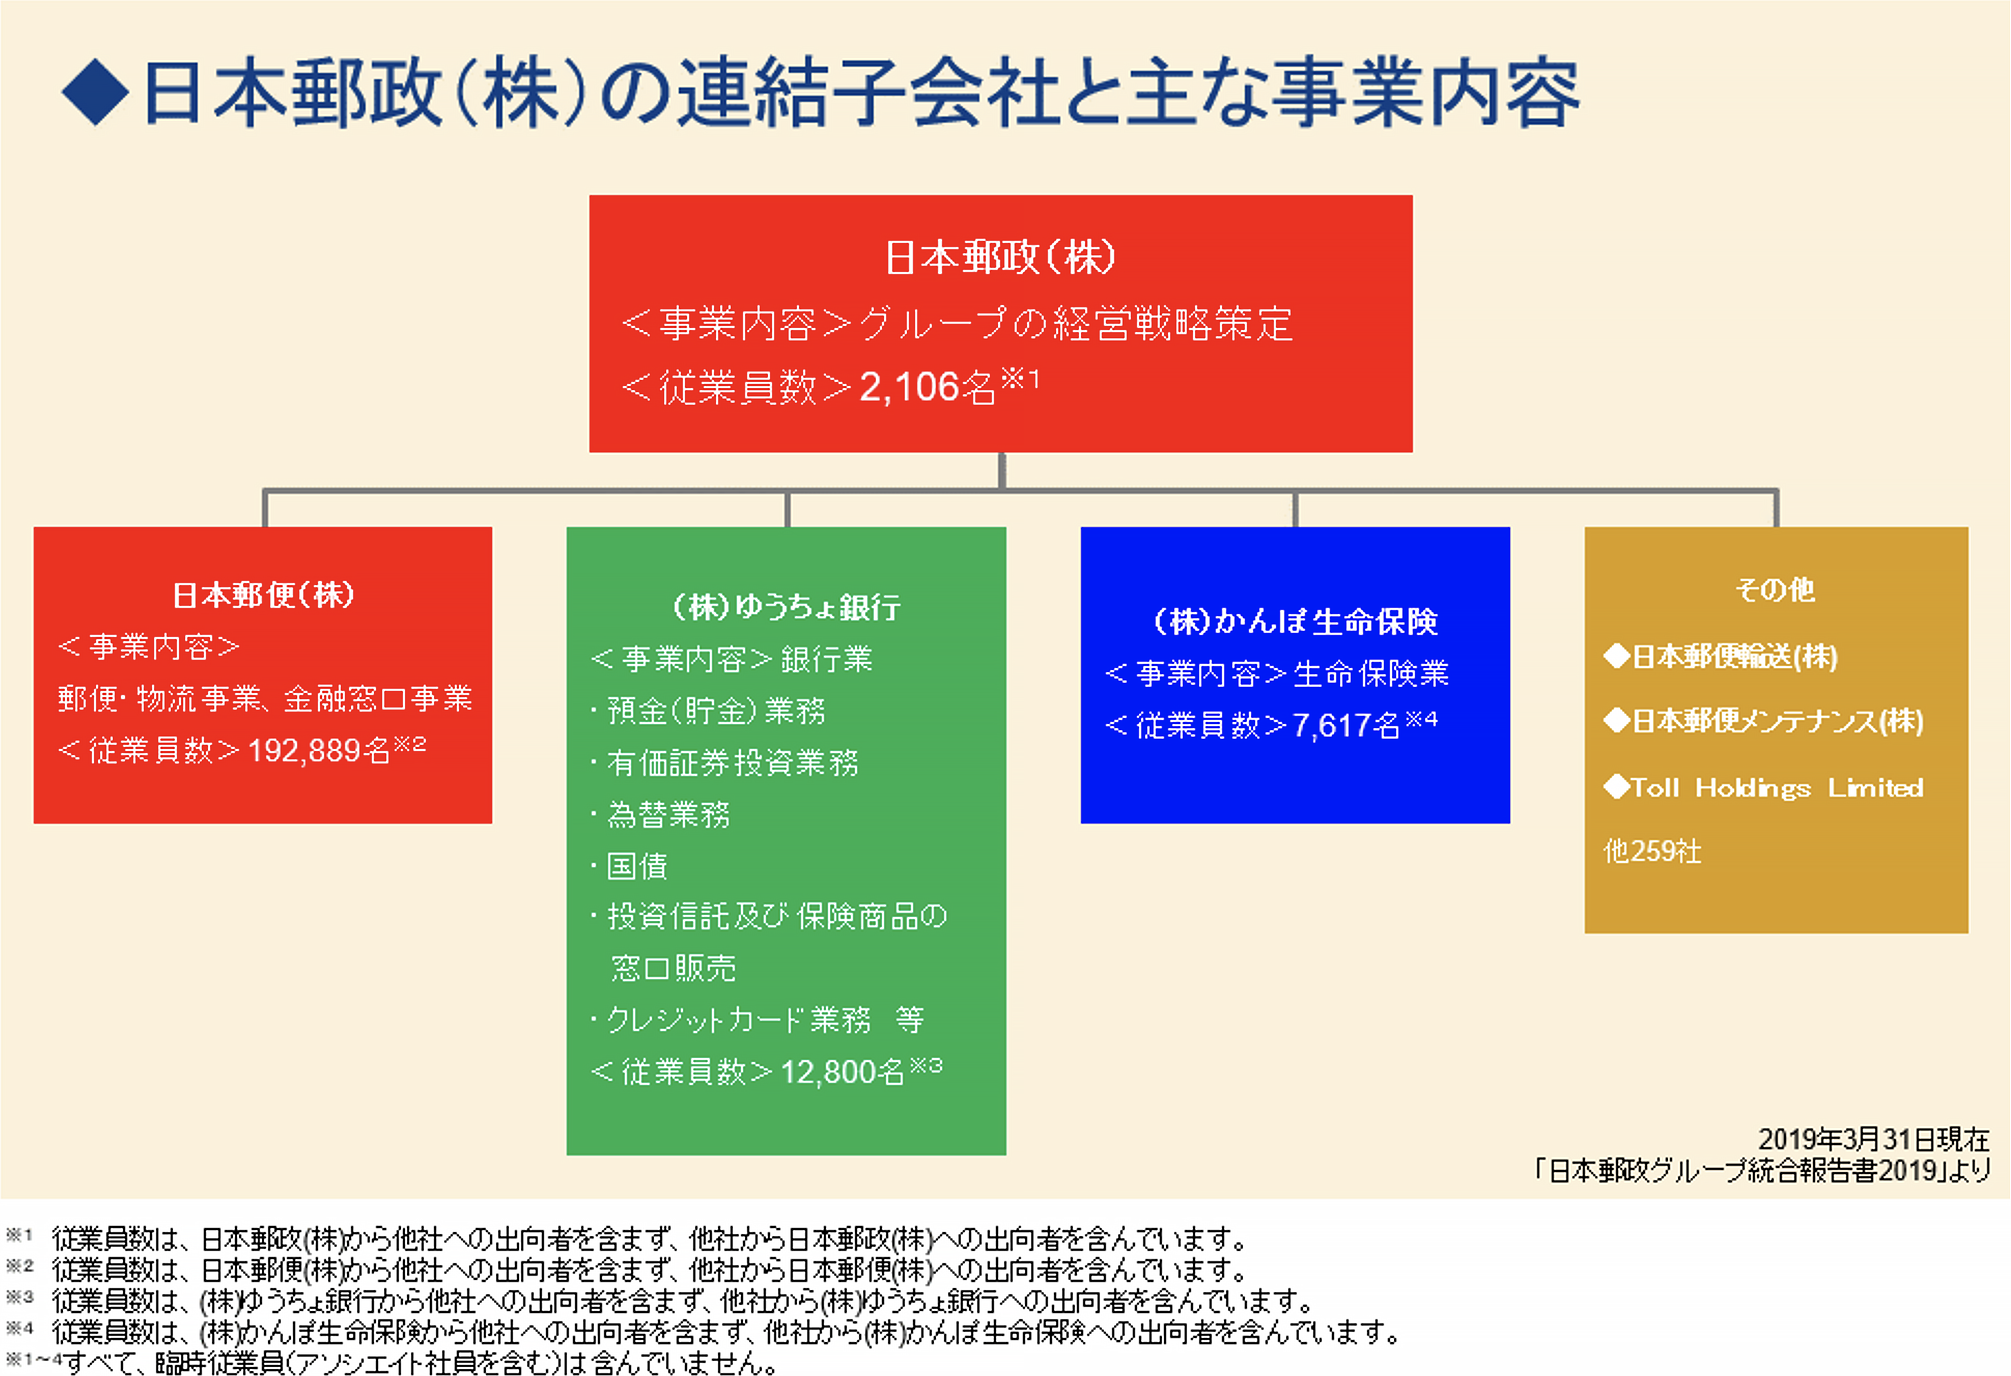 日本郵政（株）の連結子会社と主な事業内容